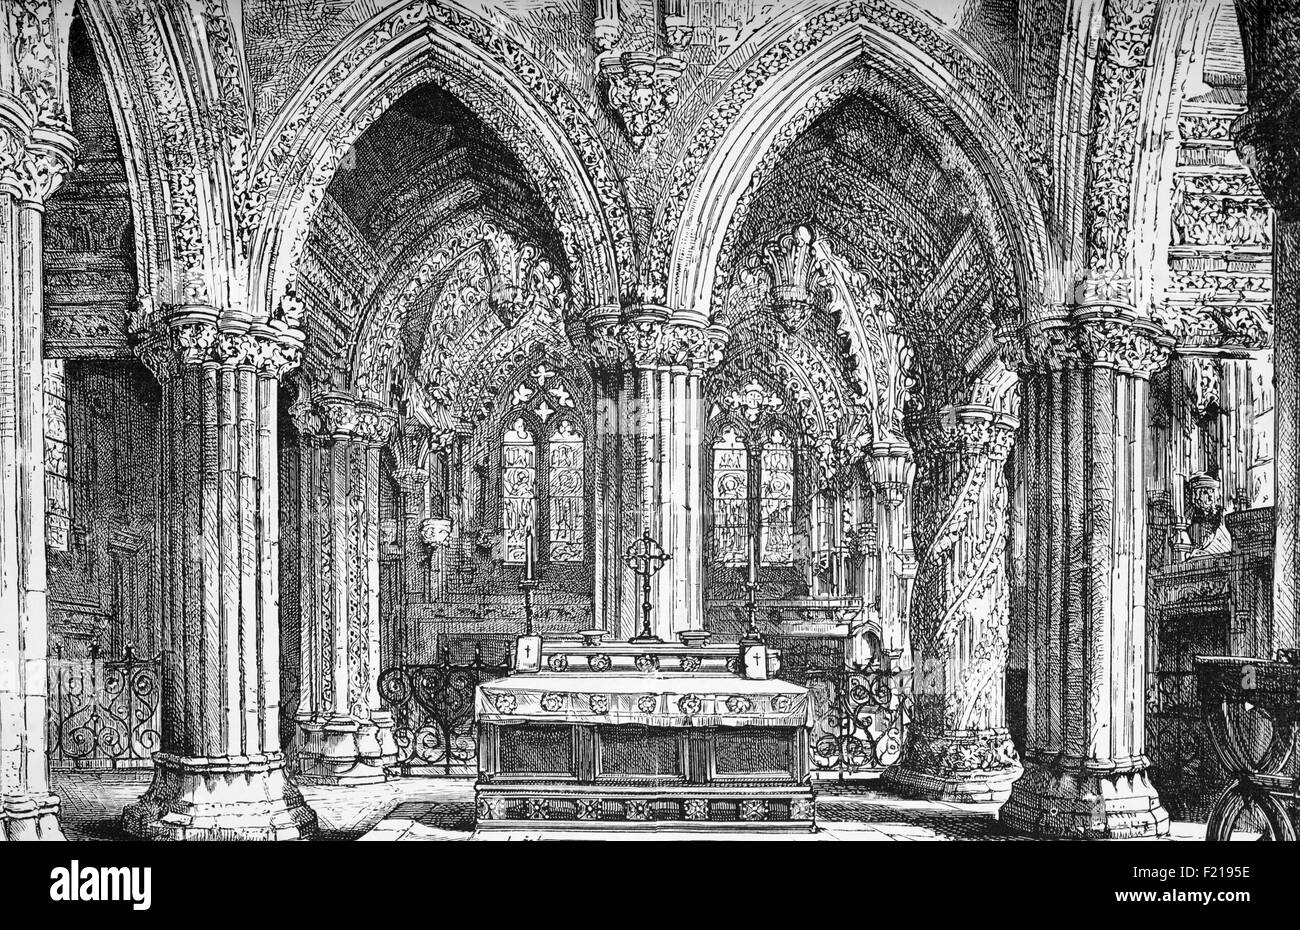 La Cappella di Rosslyn, fondata su una piccola collina sopra Roslin Glen come una chiesa cattolica chiesa collegiata nella metà del XV secolo, citato nel "Codice da Vinci" e un soggetto di grande speculazione, Roslin, Midlothian, Scozia. Foto Stock